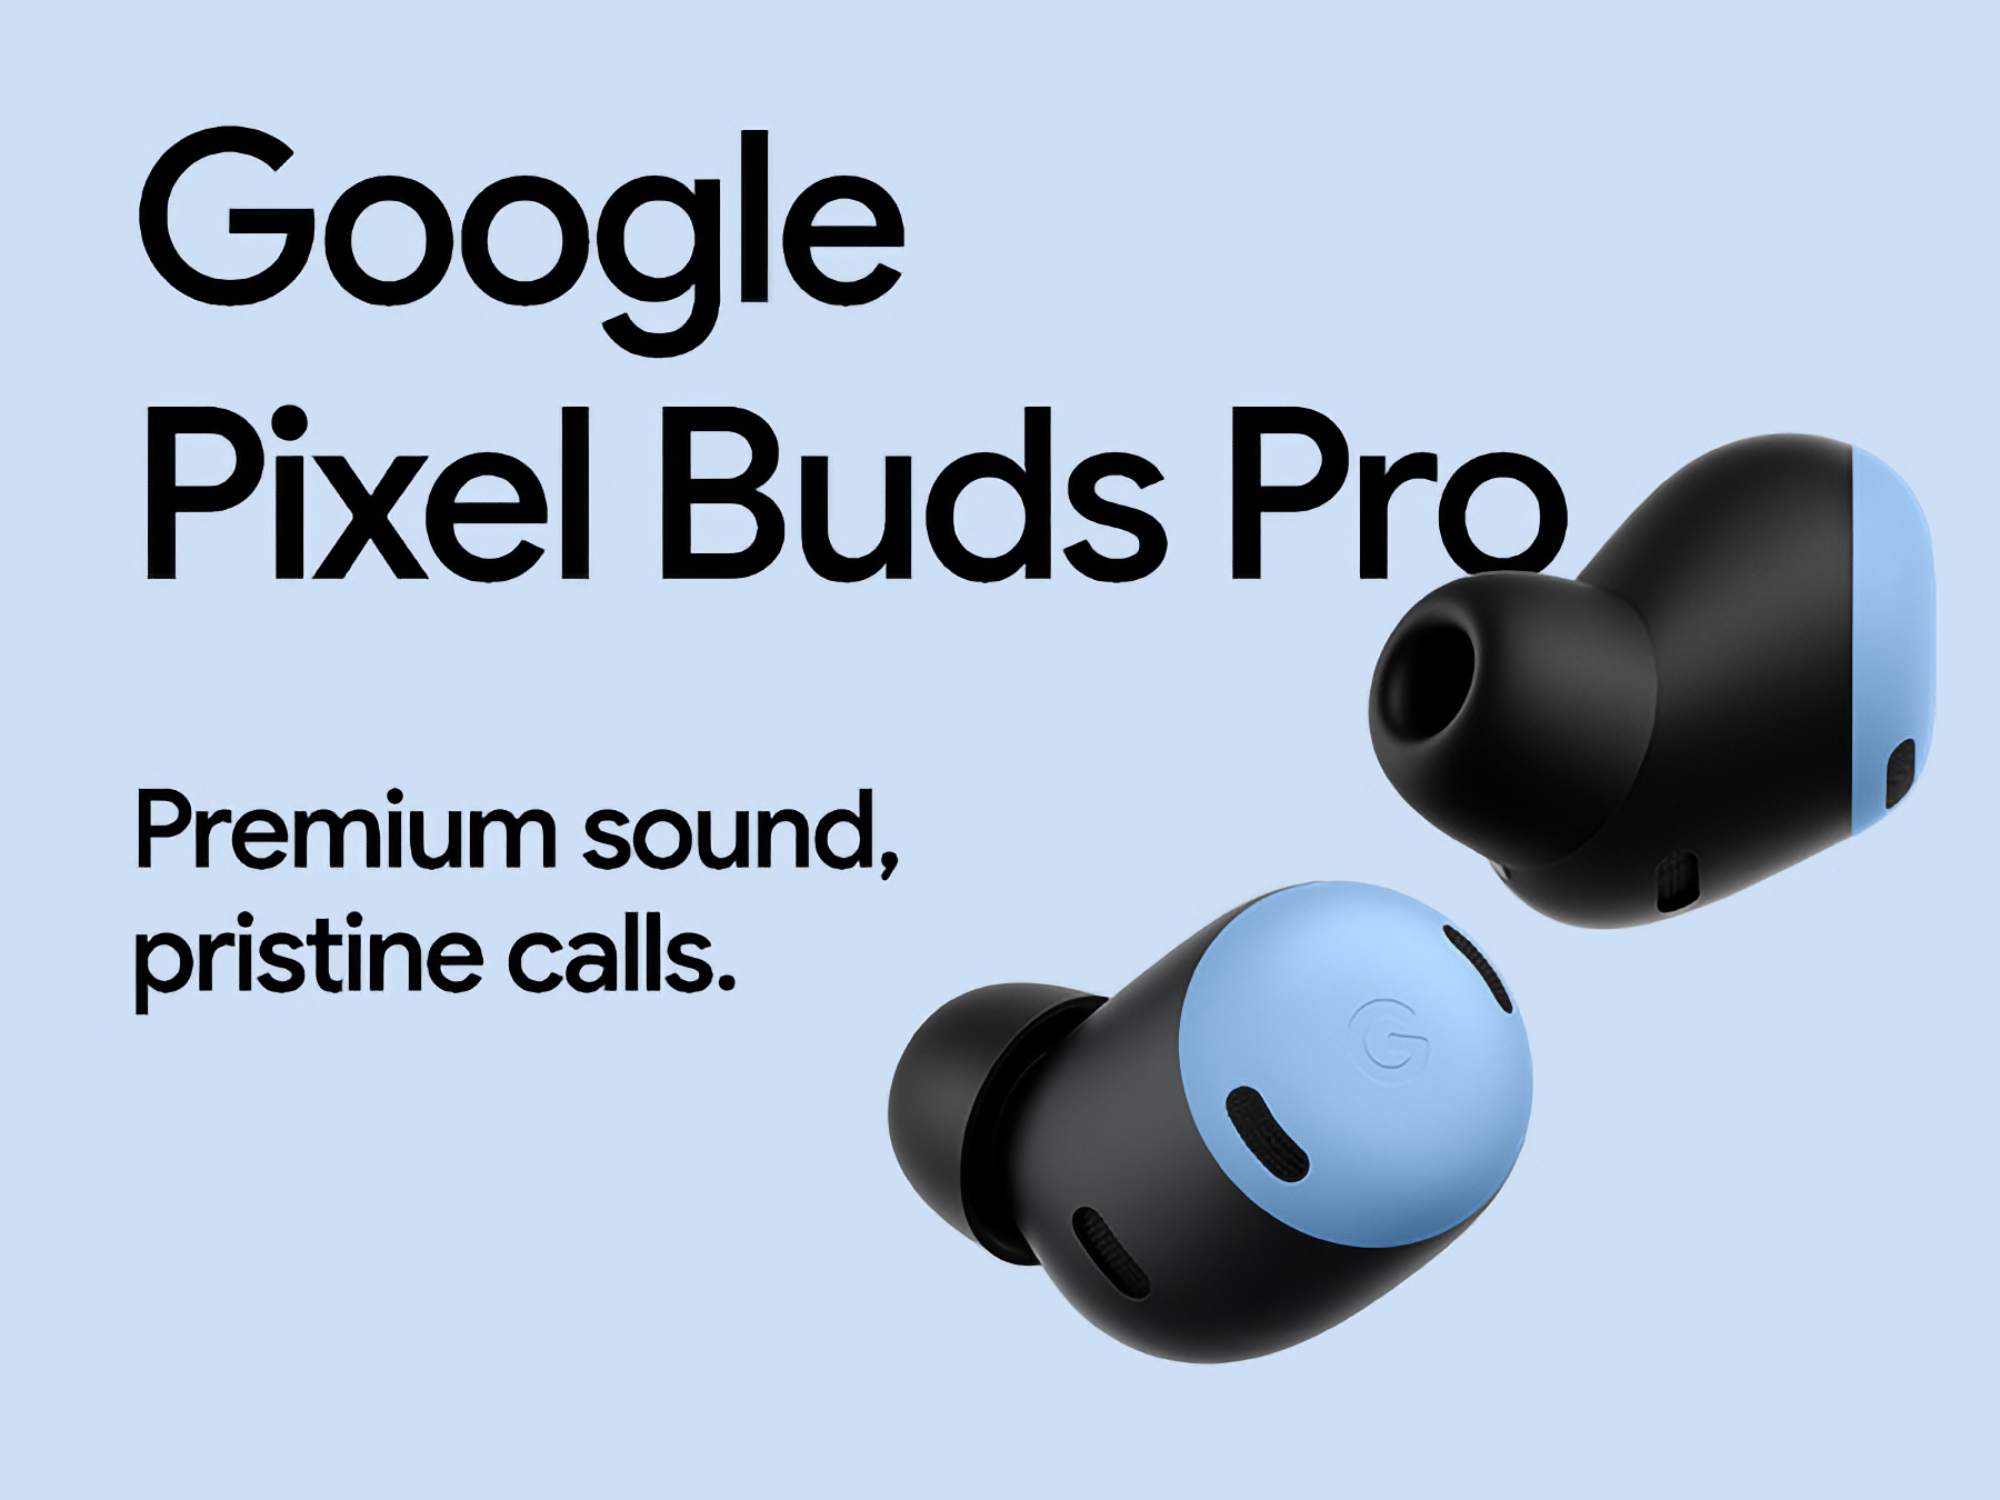 Una gran oferta: Google Pixel Buds Pro en Amazon con un descuento de 50 €.